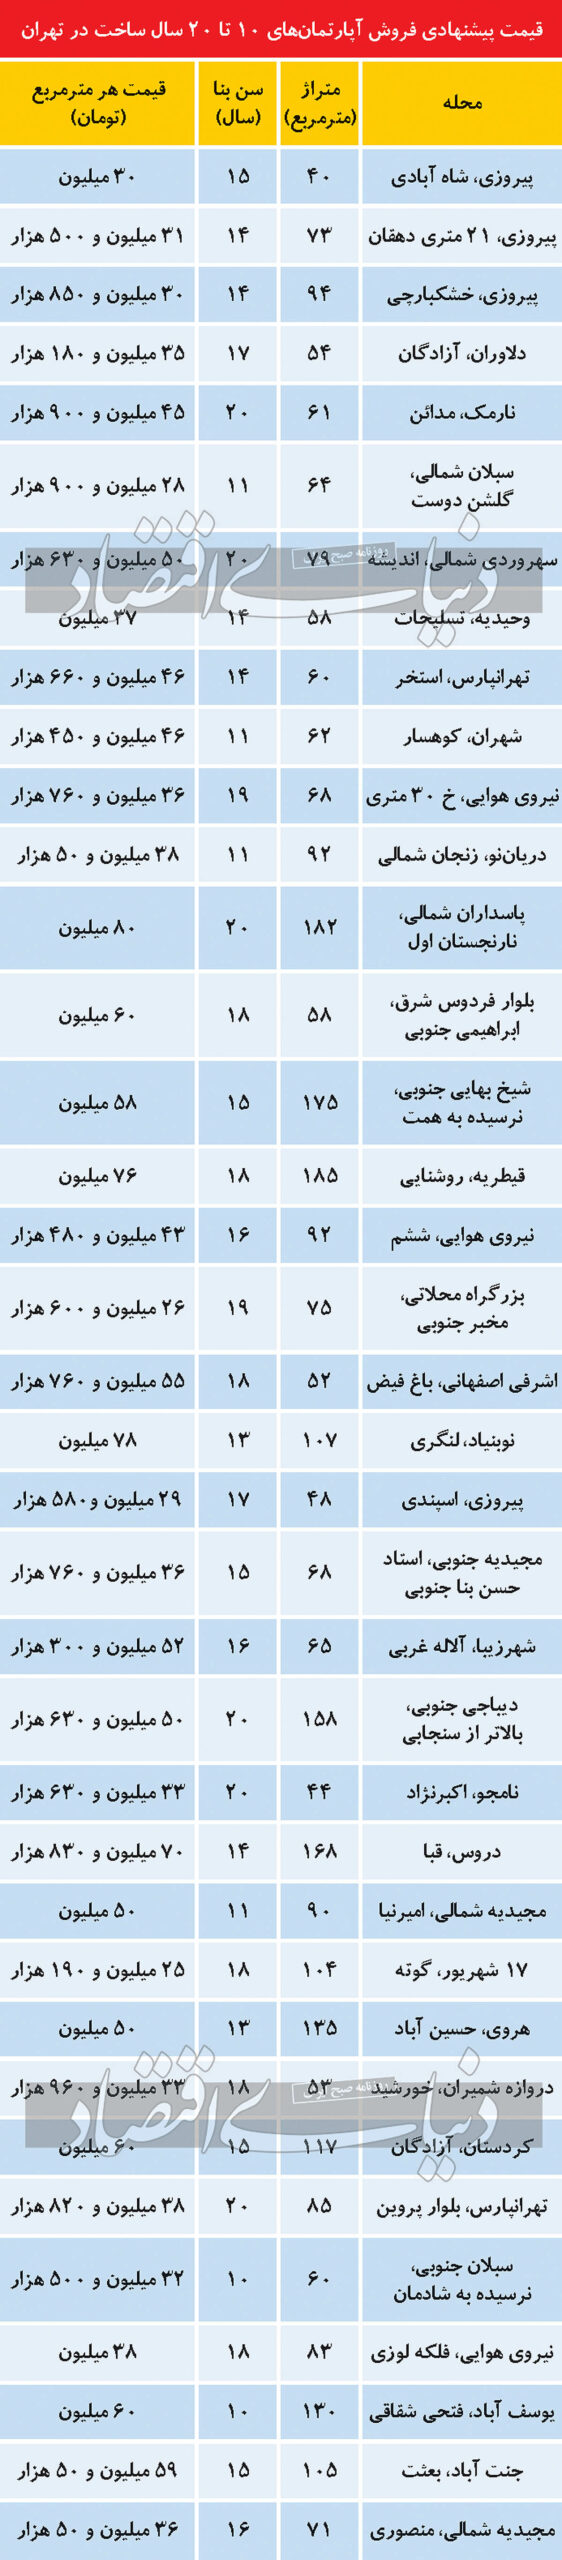 قیمت آپارتمان میانسال در تهران